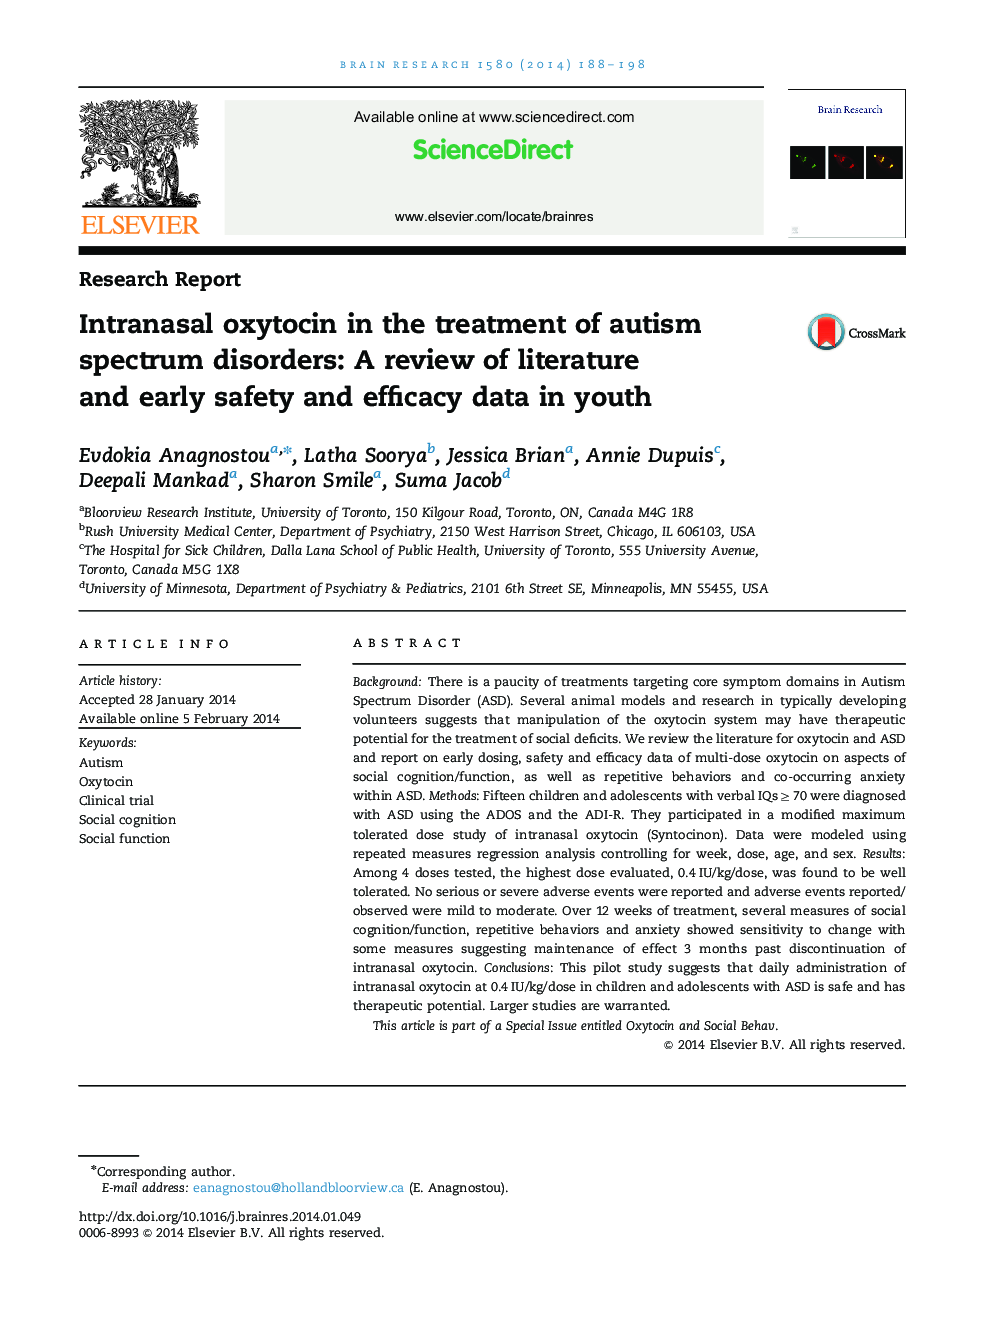 اکسایتوسین اینترناسال در درمان اختلالات طیف اوتیسم: بررسی ادبیات و داده های ایمنی و زود هنگام در جوانان 